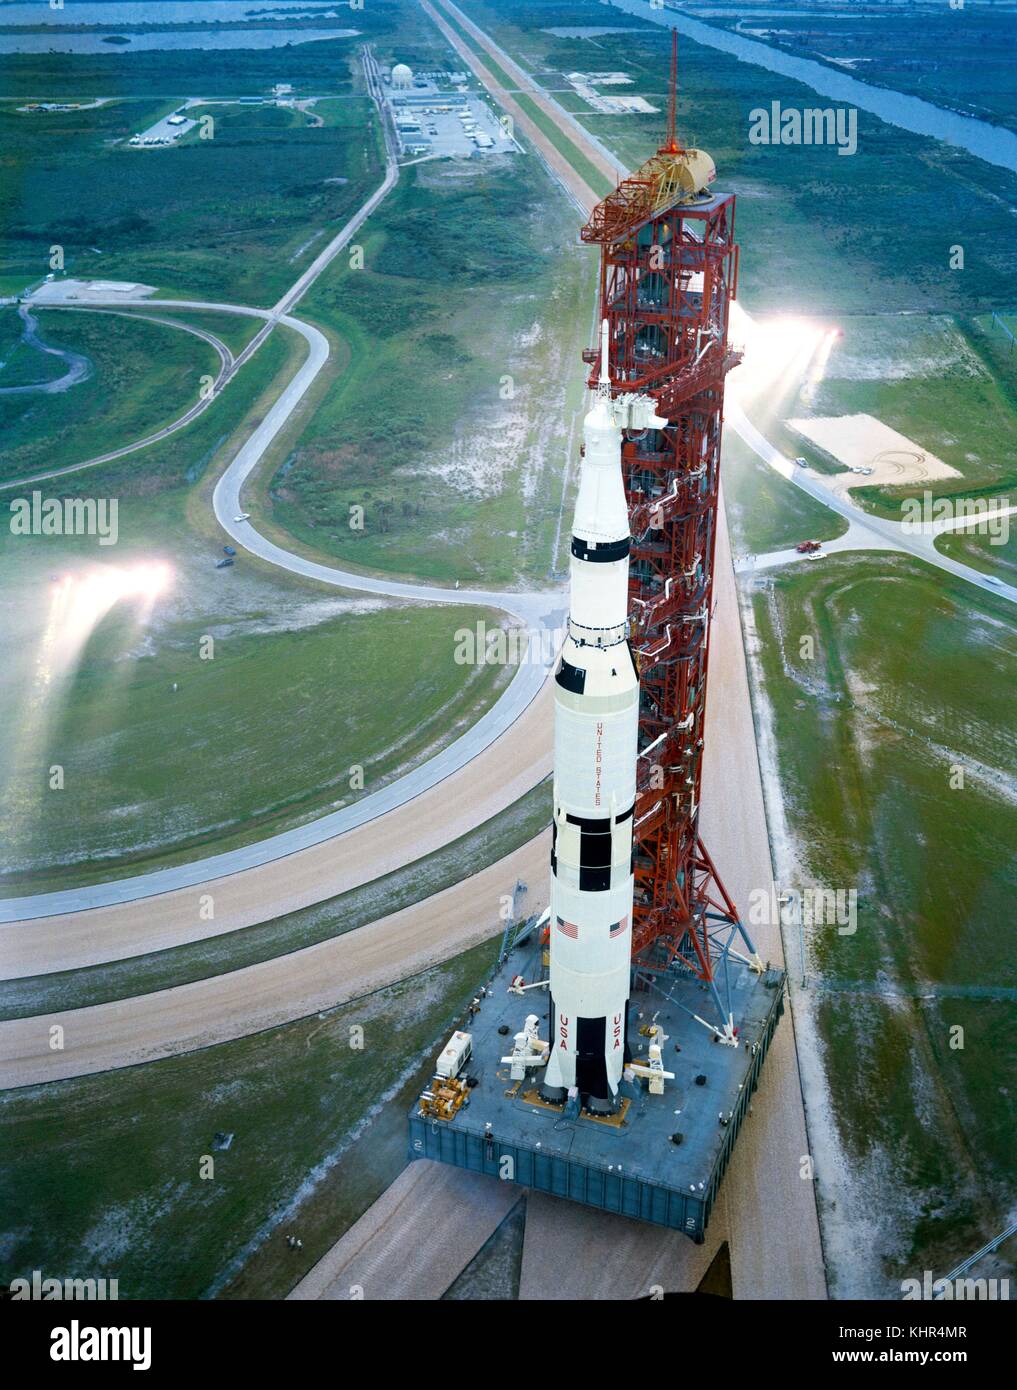 Die nasa Apollo 12 von Raumfahrzeugen und Saturn-V-Trägerrakete lassen Sie das Kennedy Space Center Vehicle Assembly Building in der Vorbereitung für den Start und Mondlandung Mission am 8. September 1969 in Merritt Island, Florida. (Foto: Nasa Foto über planetpix) Stockfoto